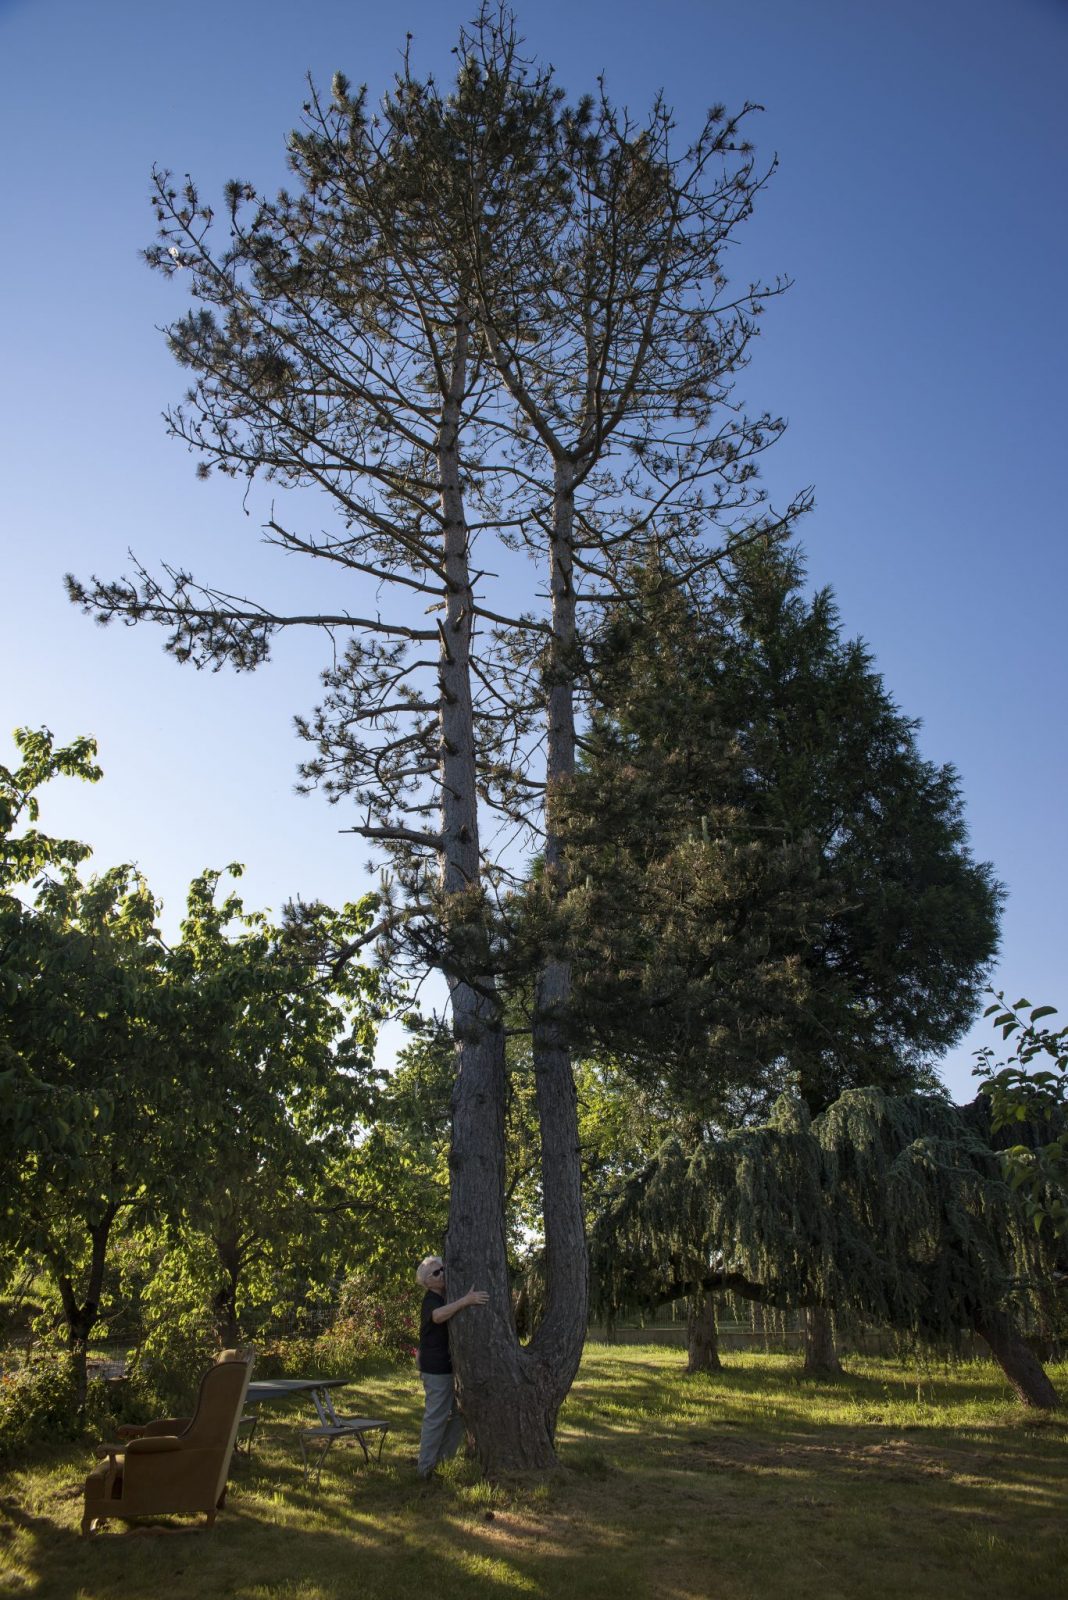 Josiane, tree hugger, and a Pine hugged tree (Mayenne, 2017)